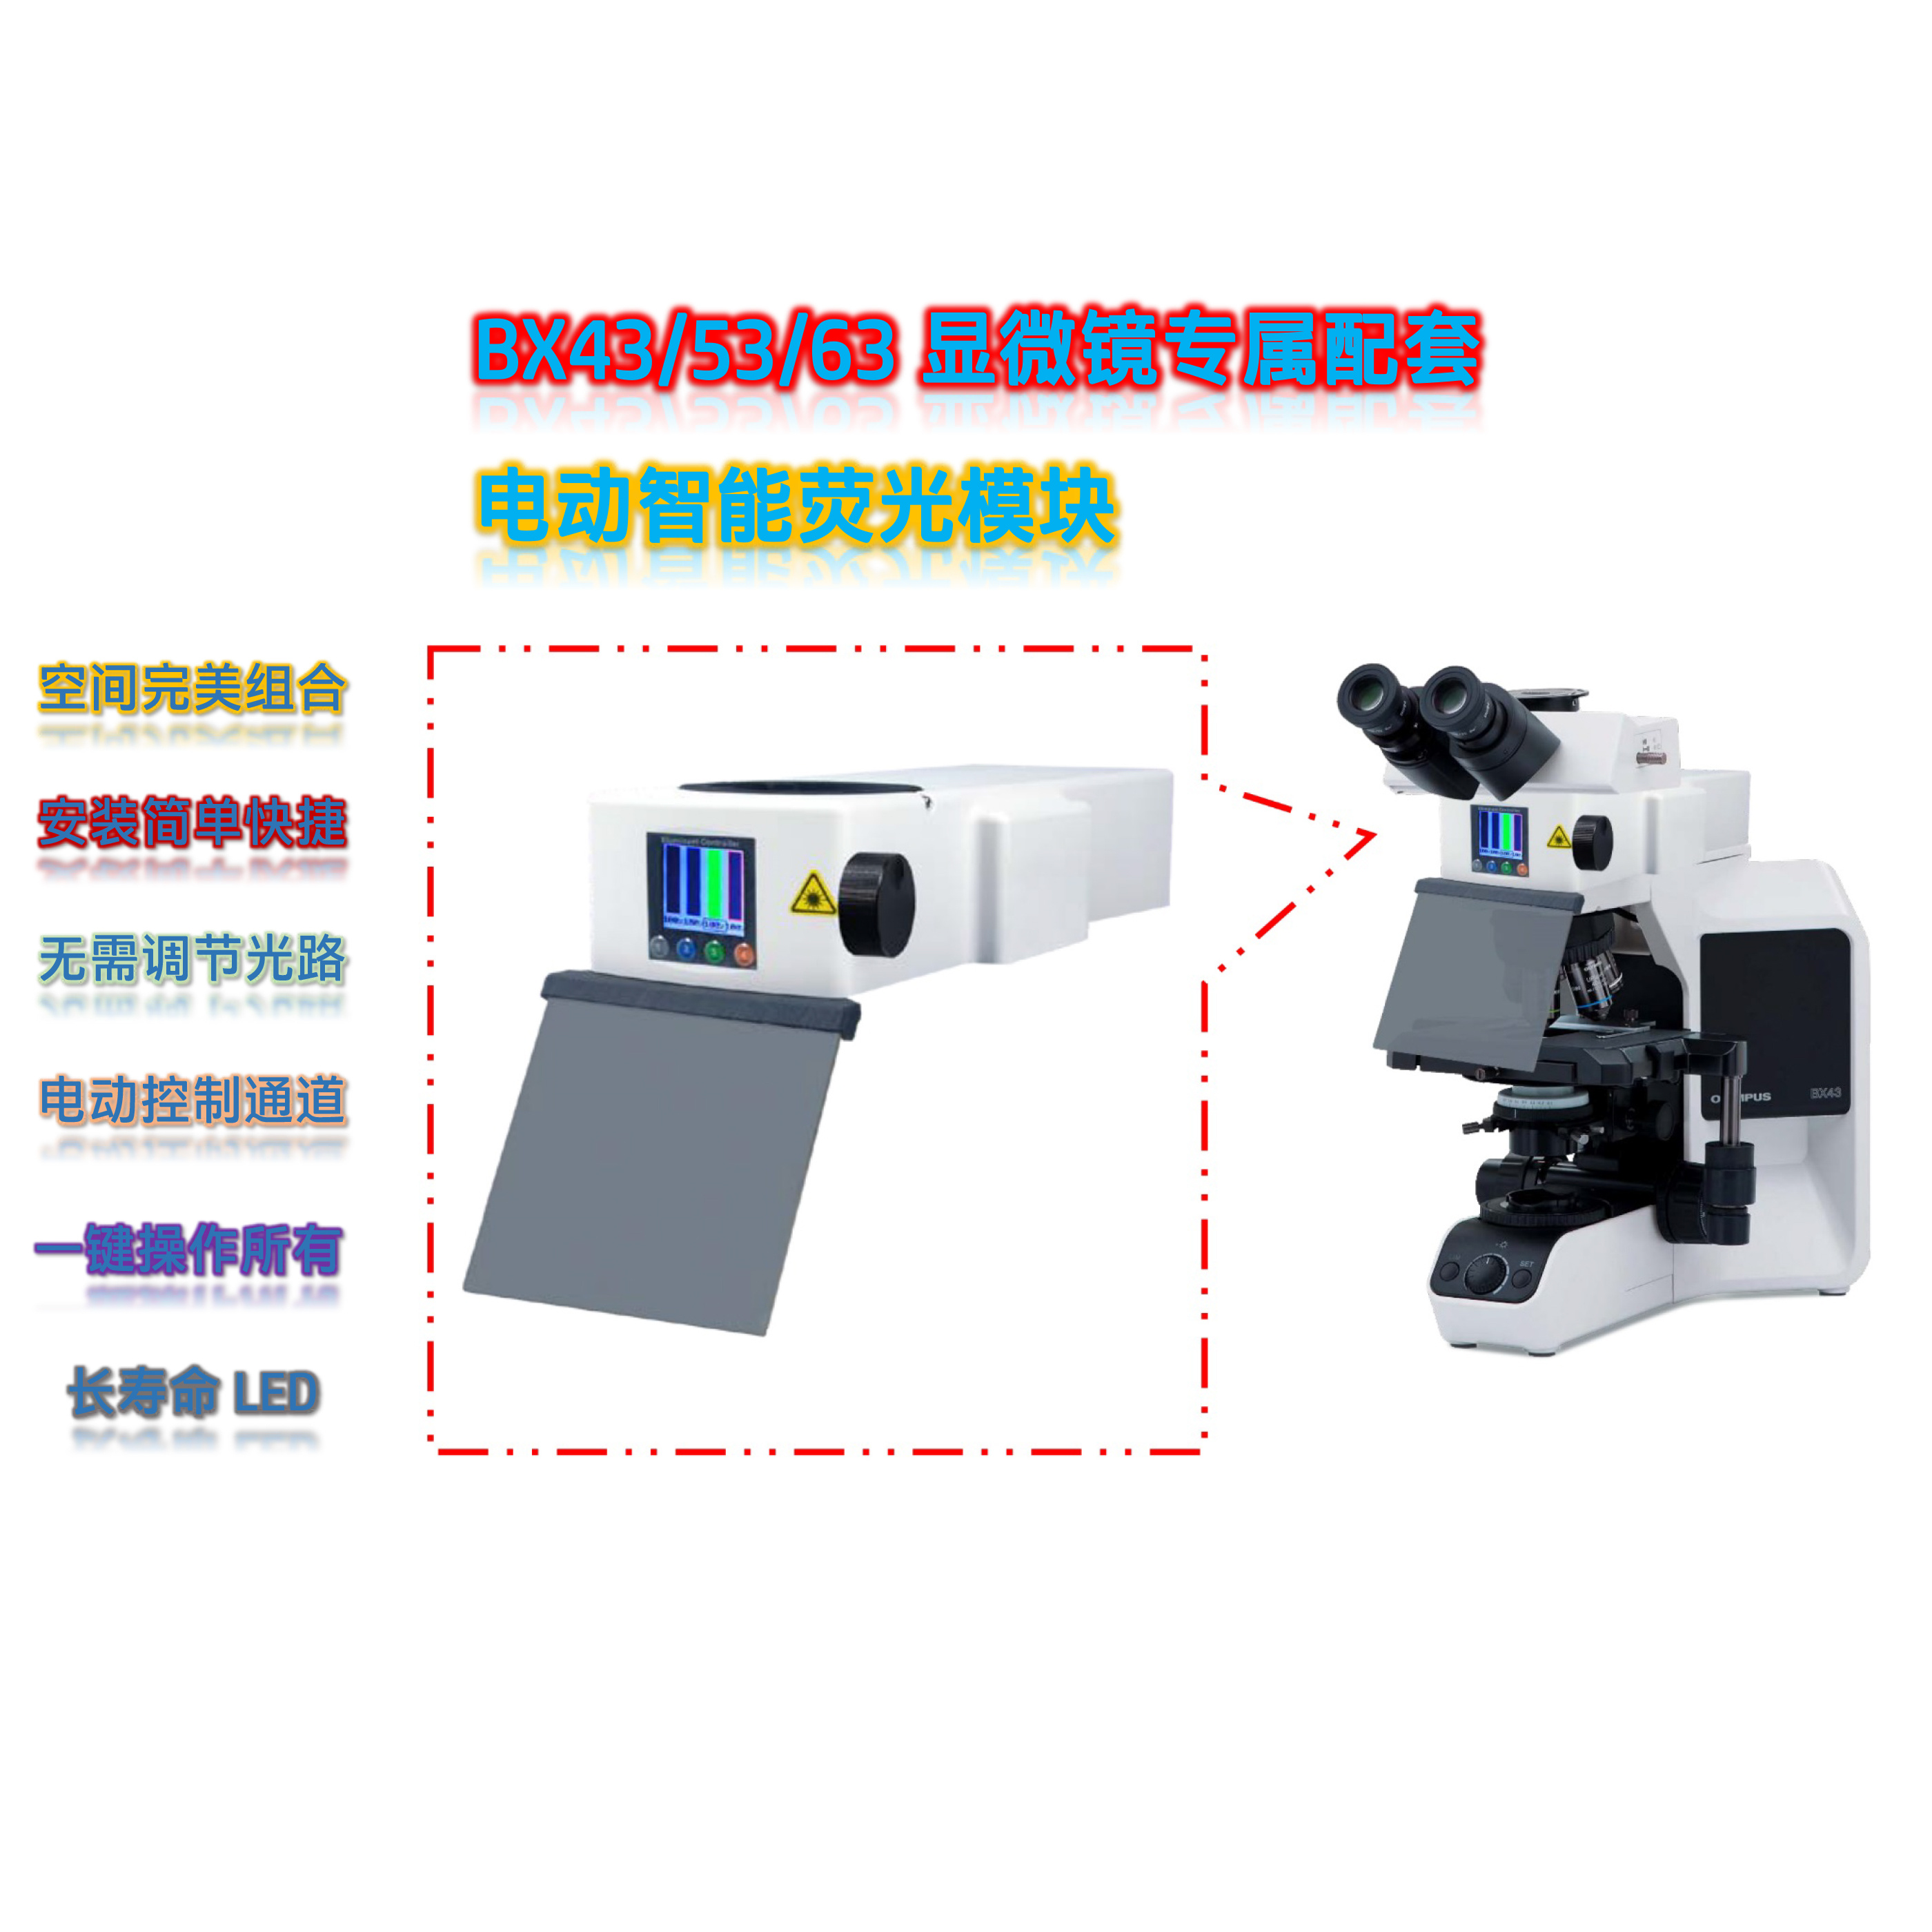 奥林巴斯显微镜BX43/53配套荧光附件正置荧光模块BX-G-E